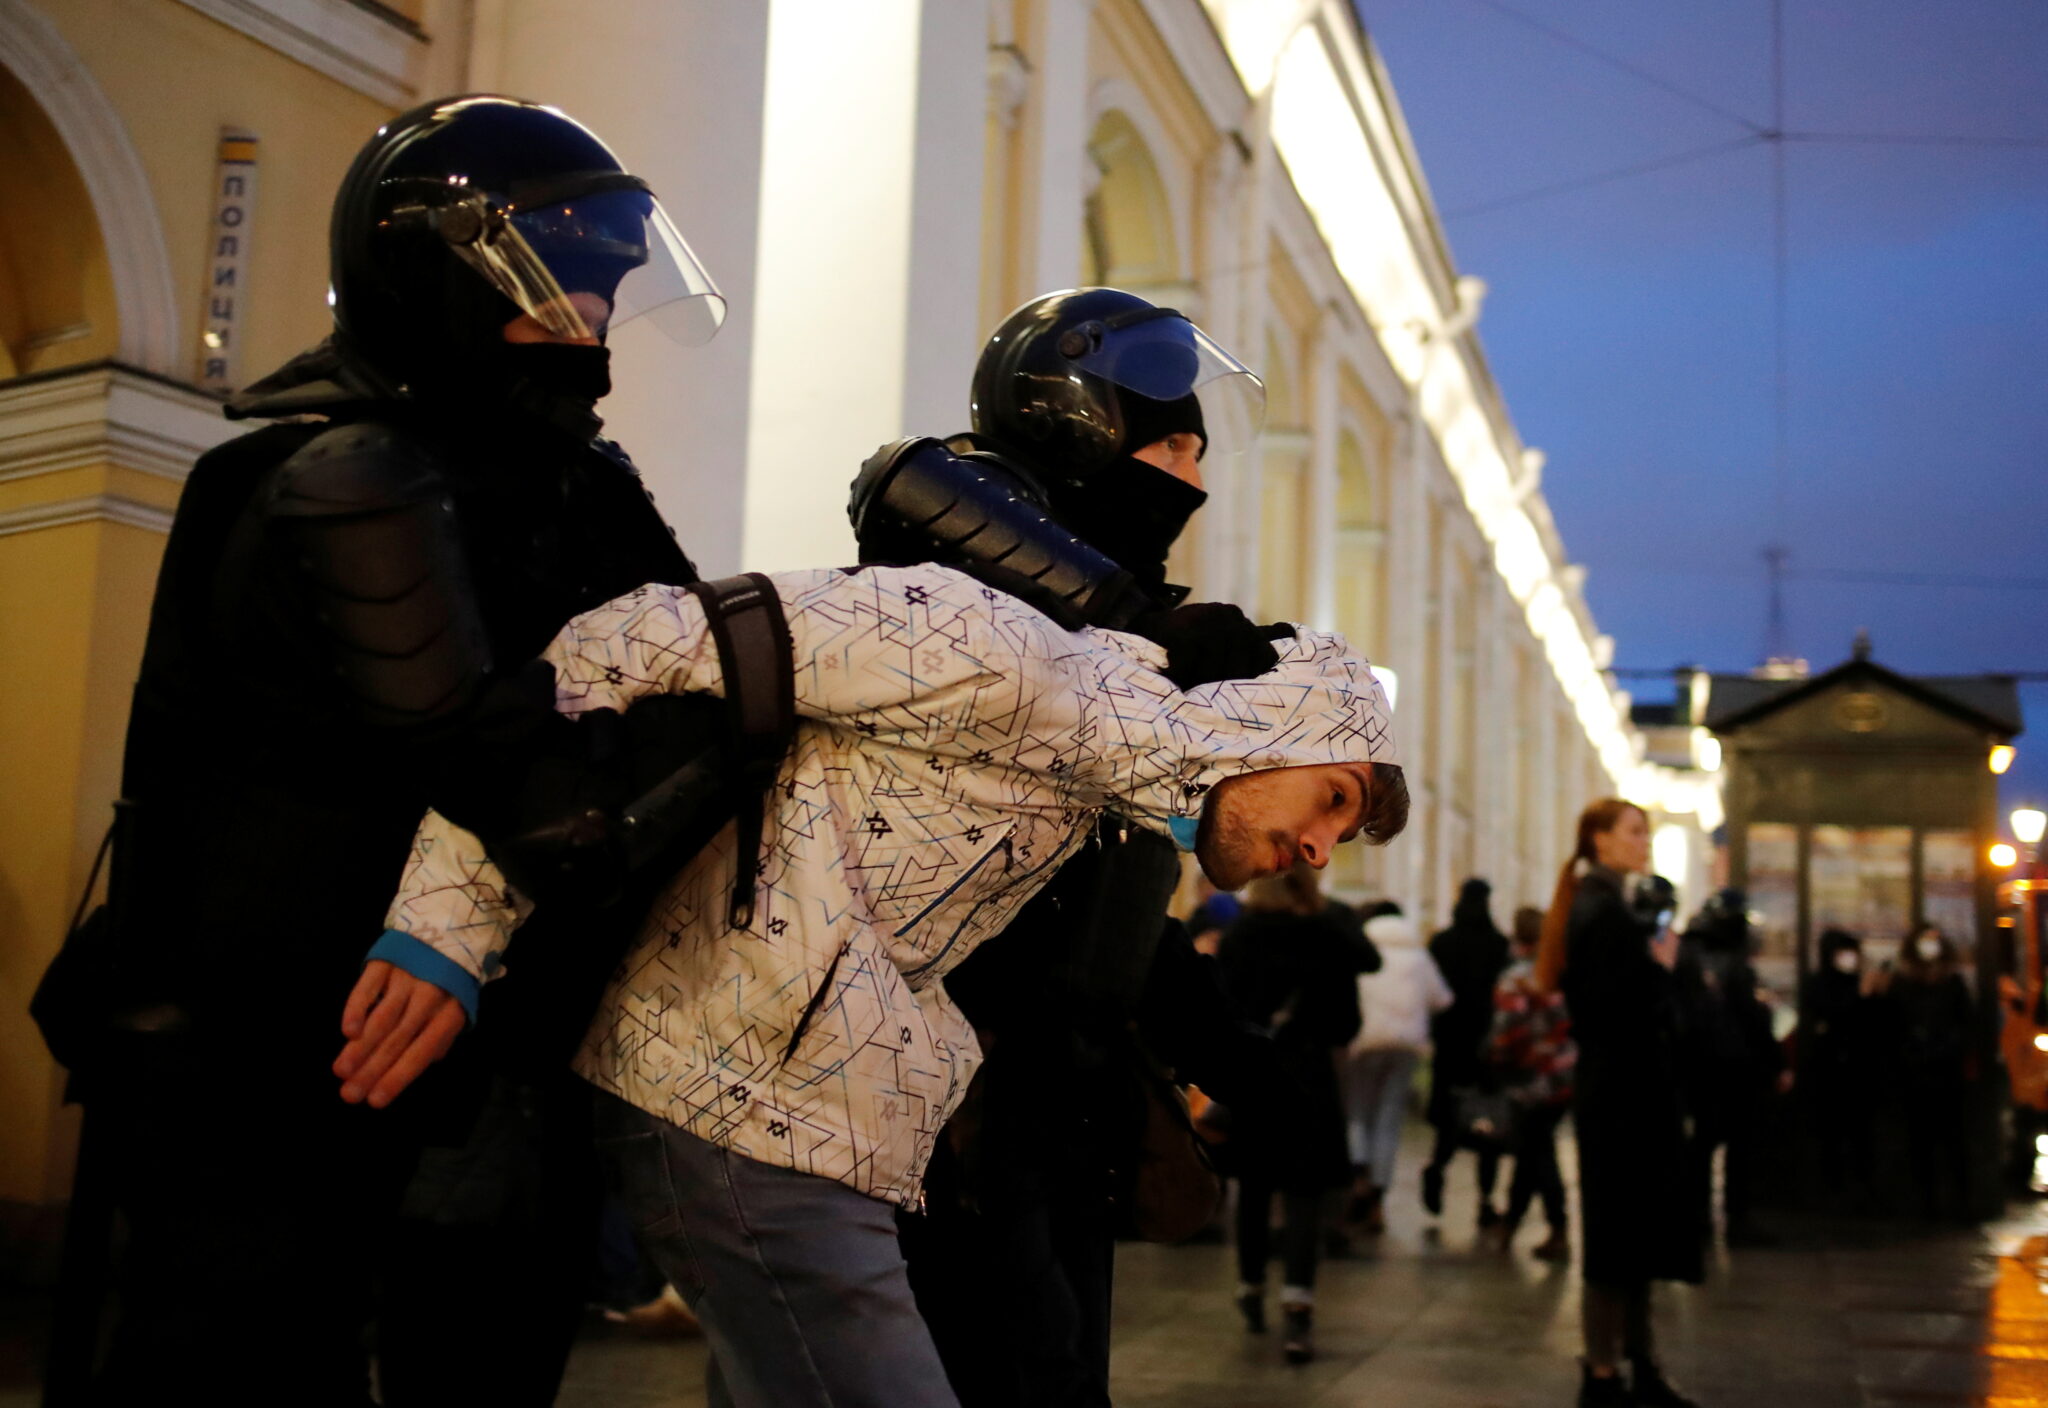 Задержание протестующего в Санкт-Петербурге, 21 апреля 2021 г. Фото ANTON VAGANOV / TASS / Scanpix / Leta